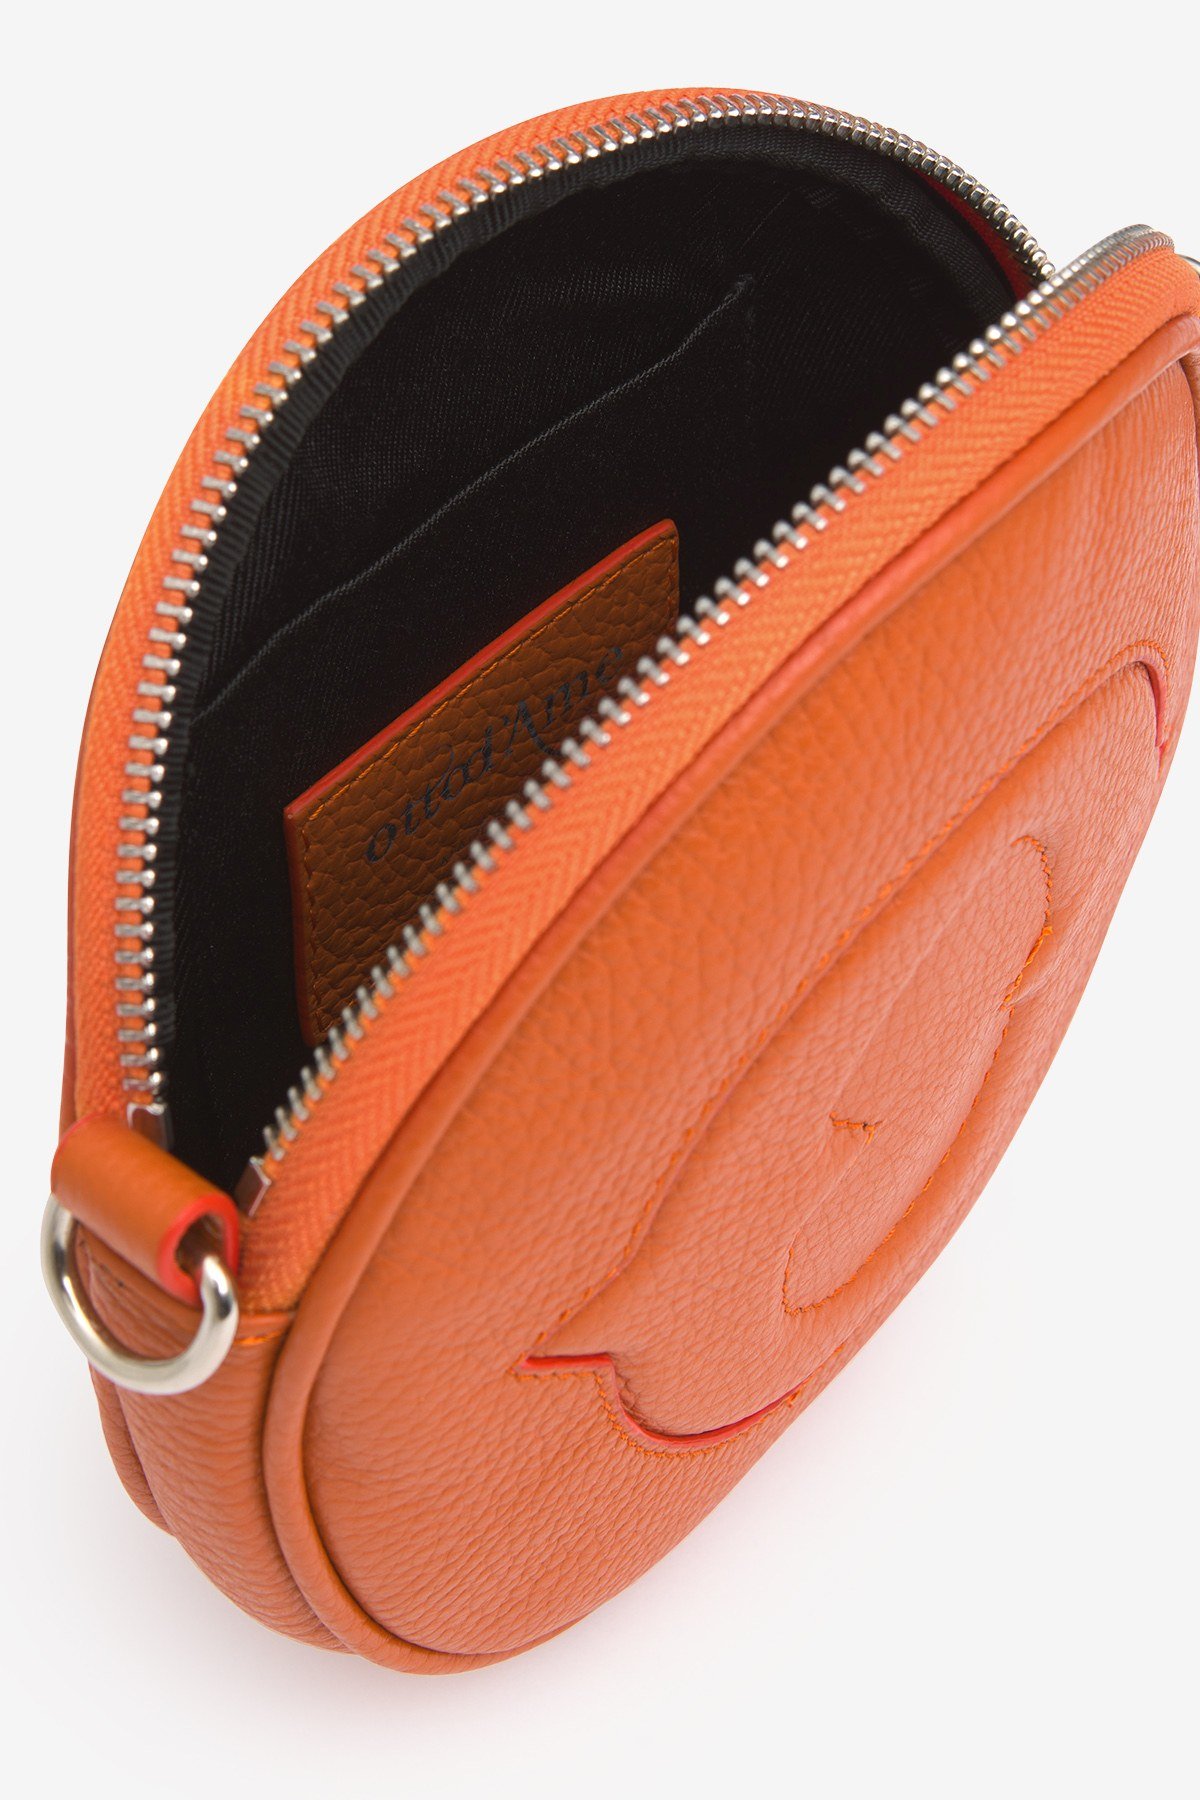 Leather mini handbag